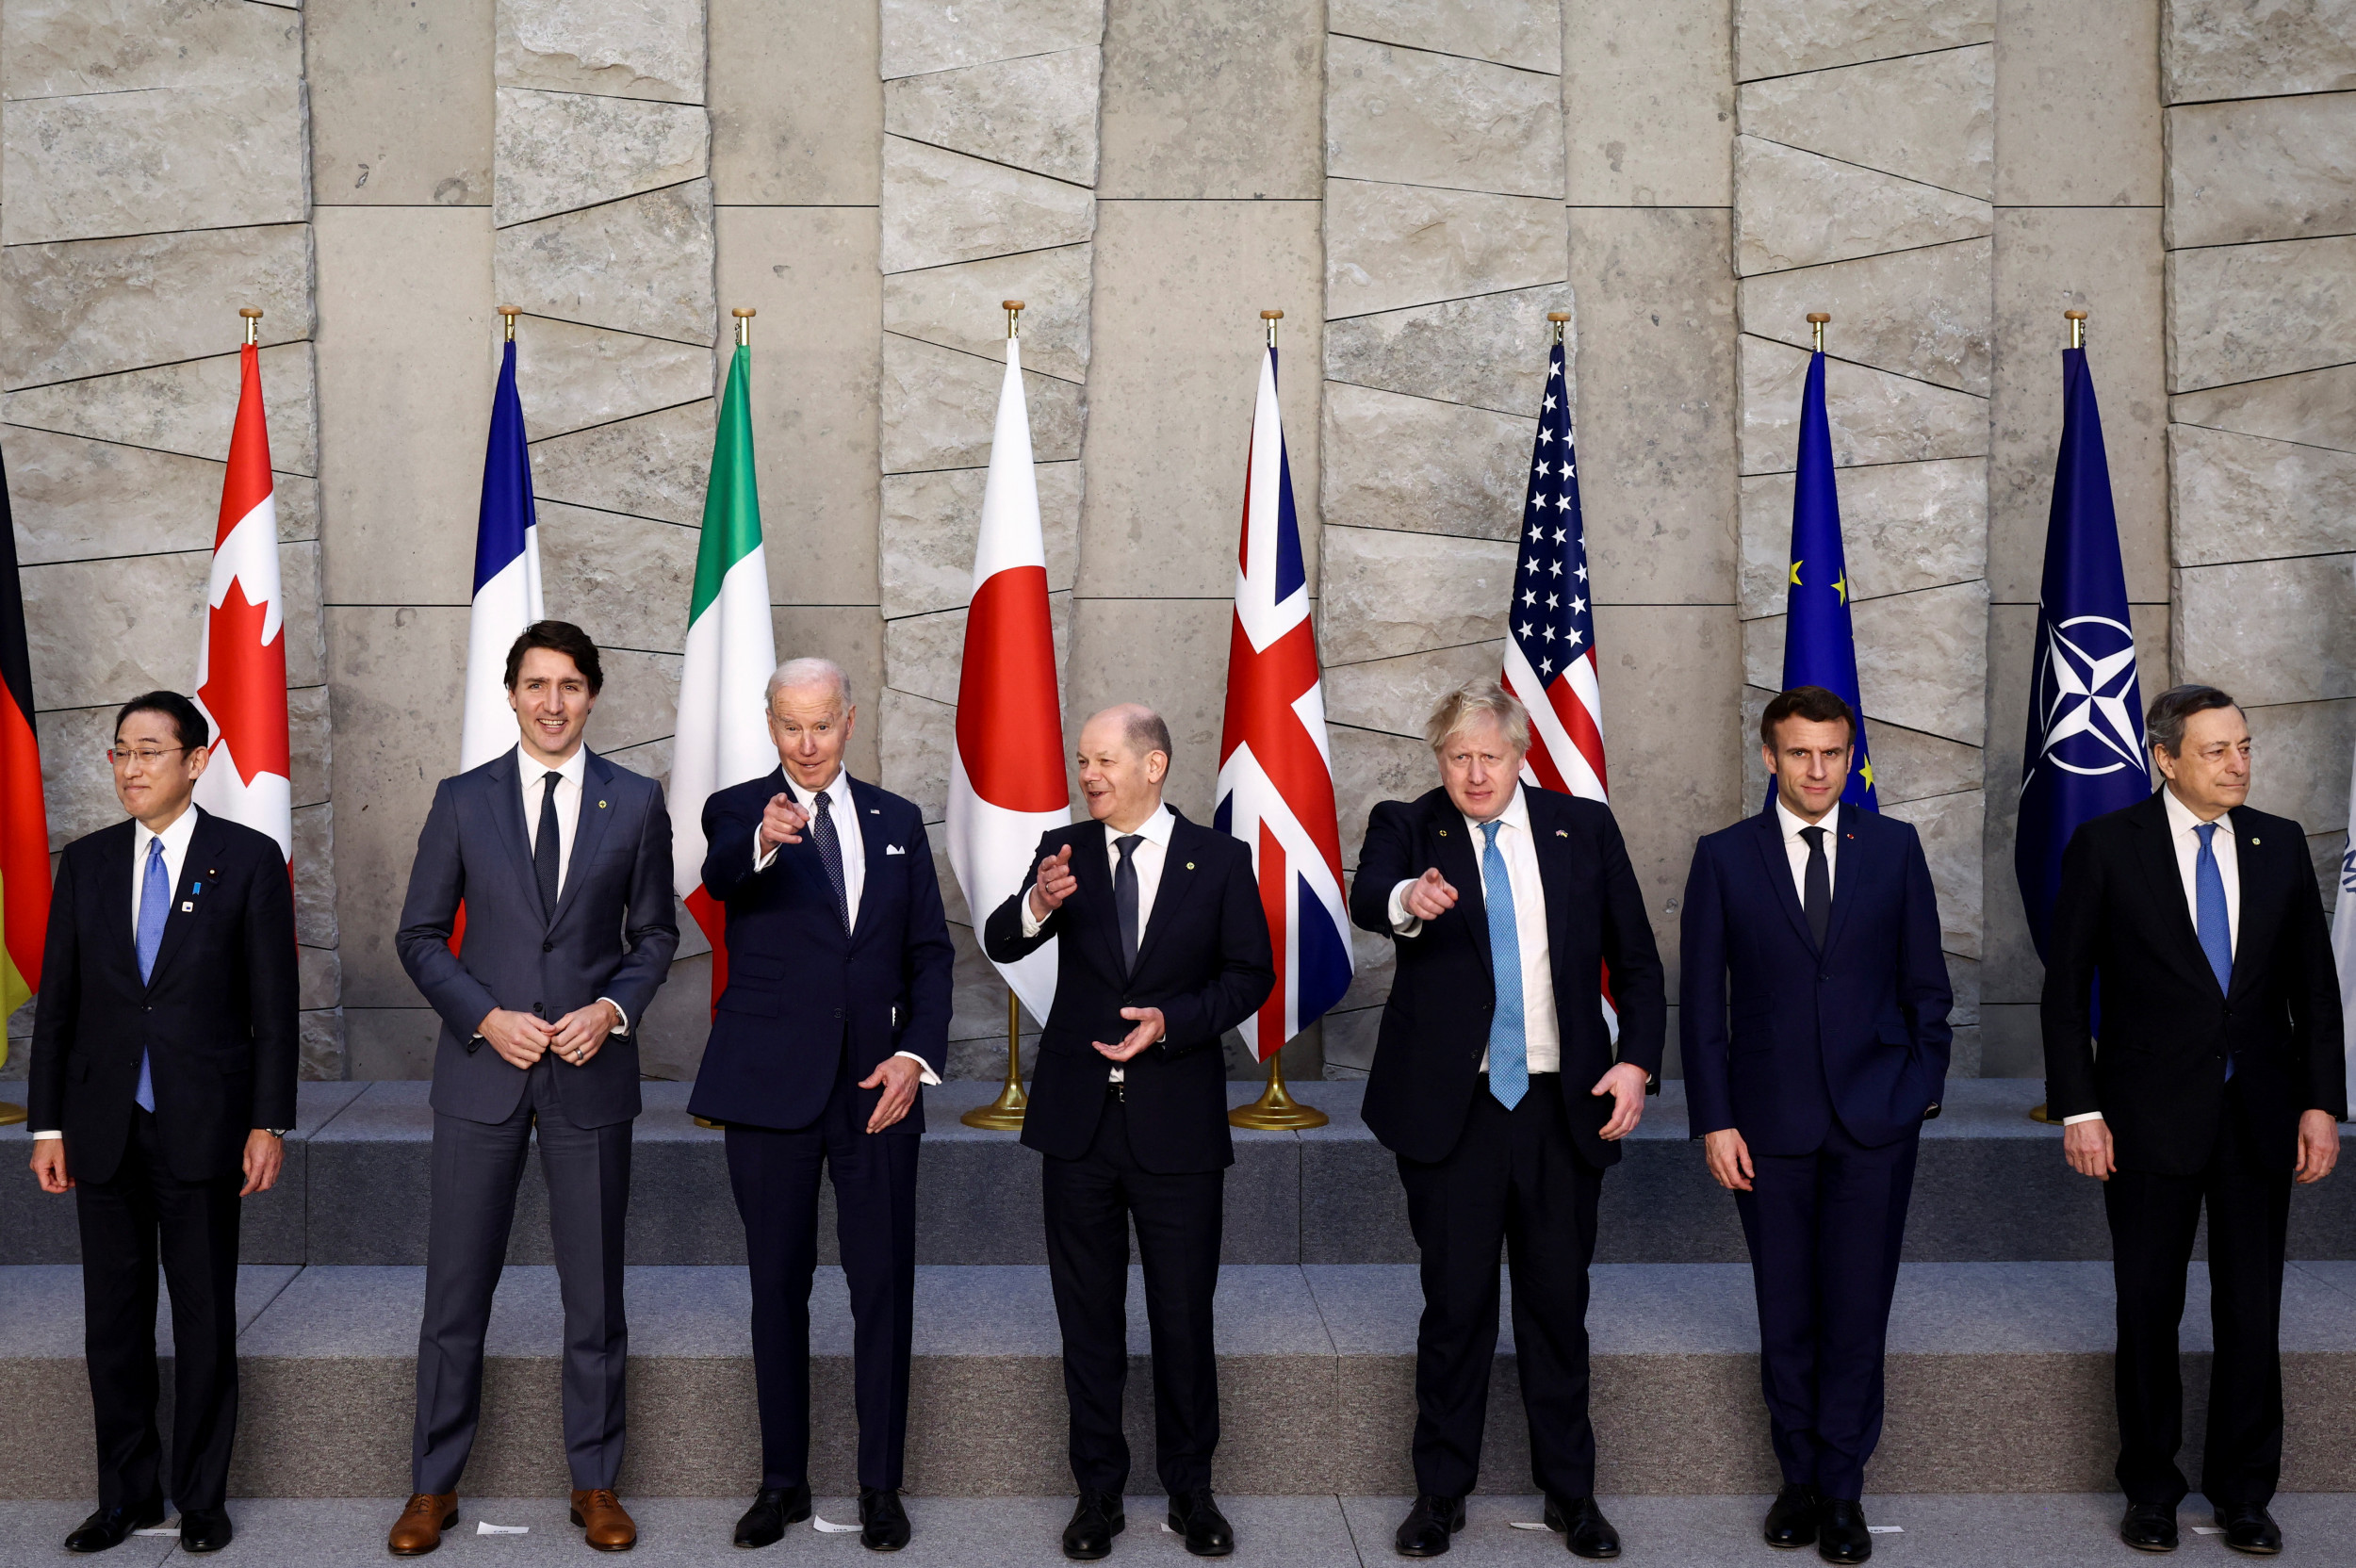 g7-leaders-meeting-brussels.jpg